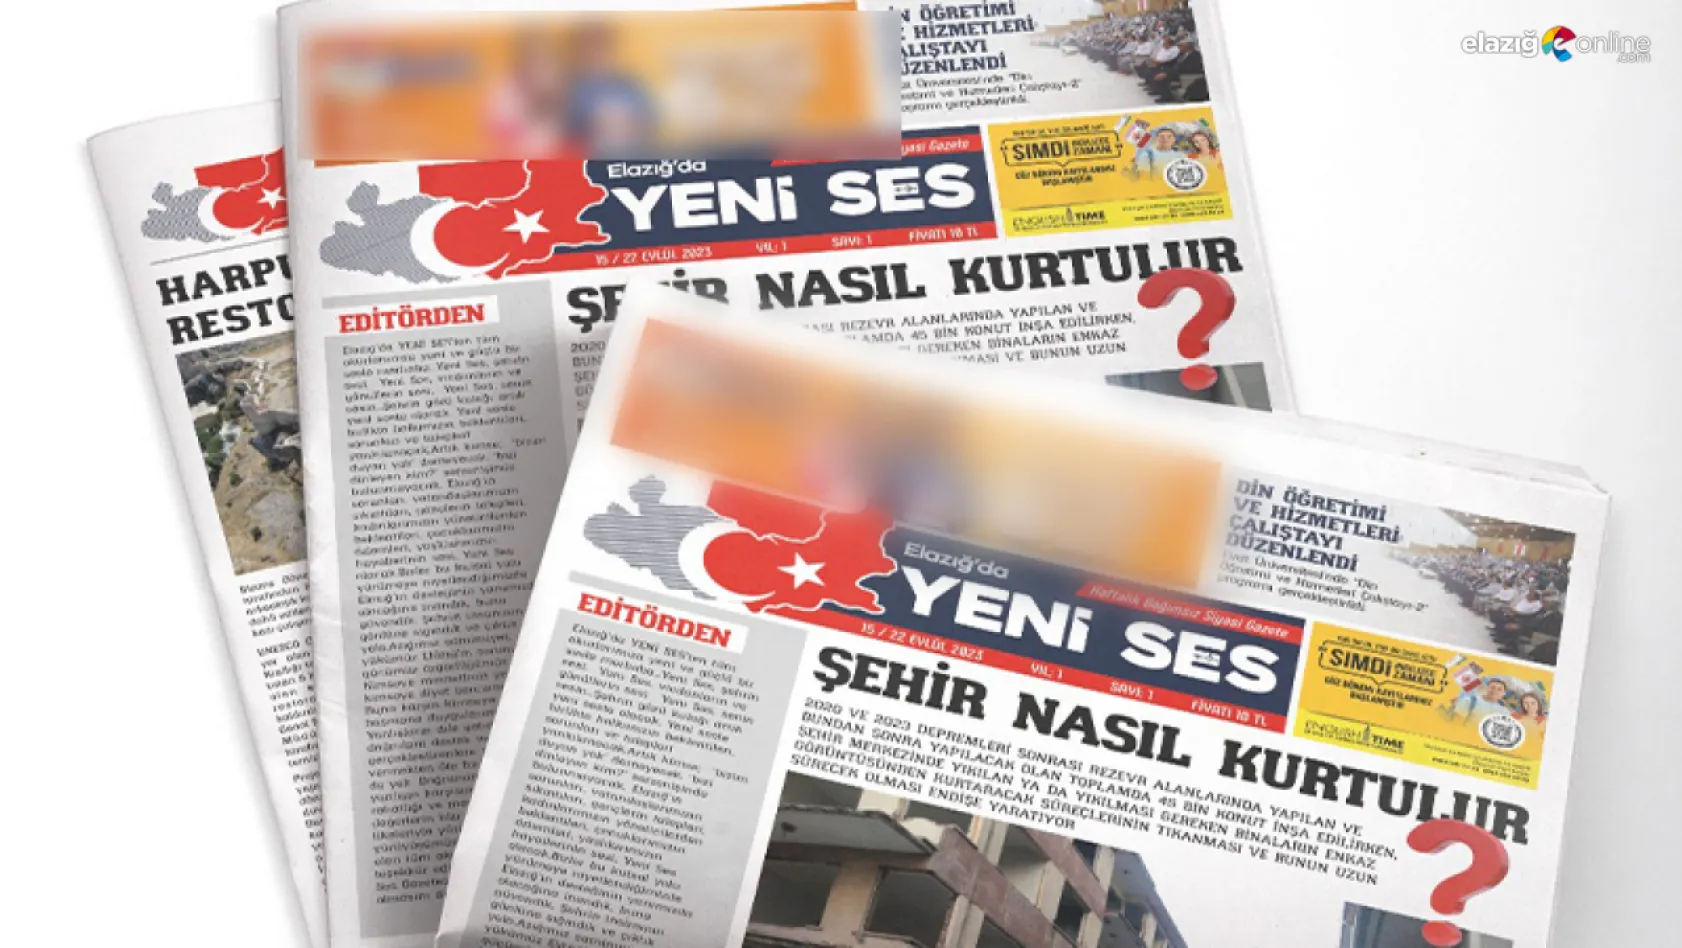 'Elazığ'da Yeni Ses' Gazetesi yayın hayatına başladı!